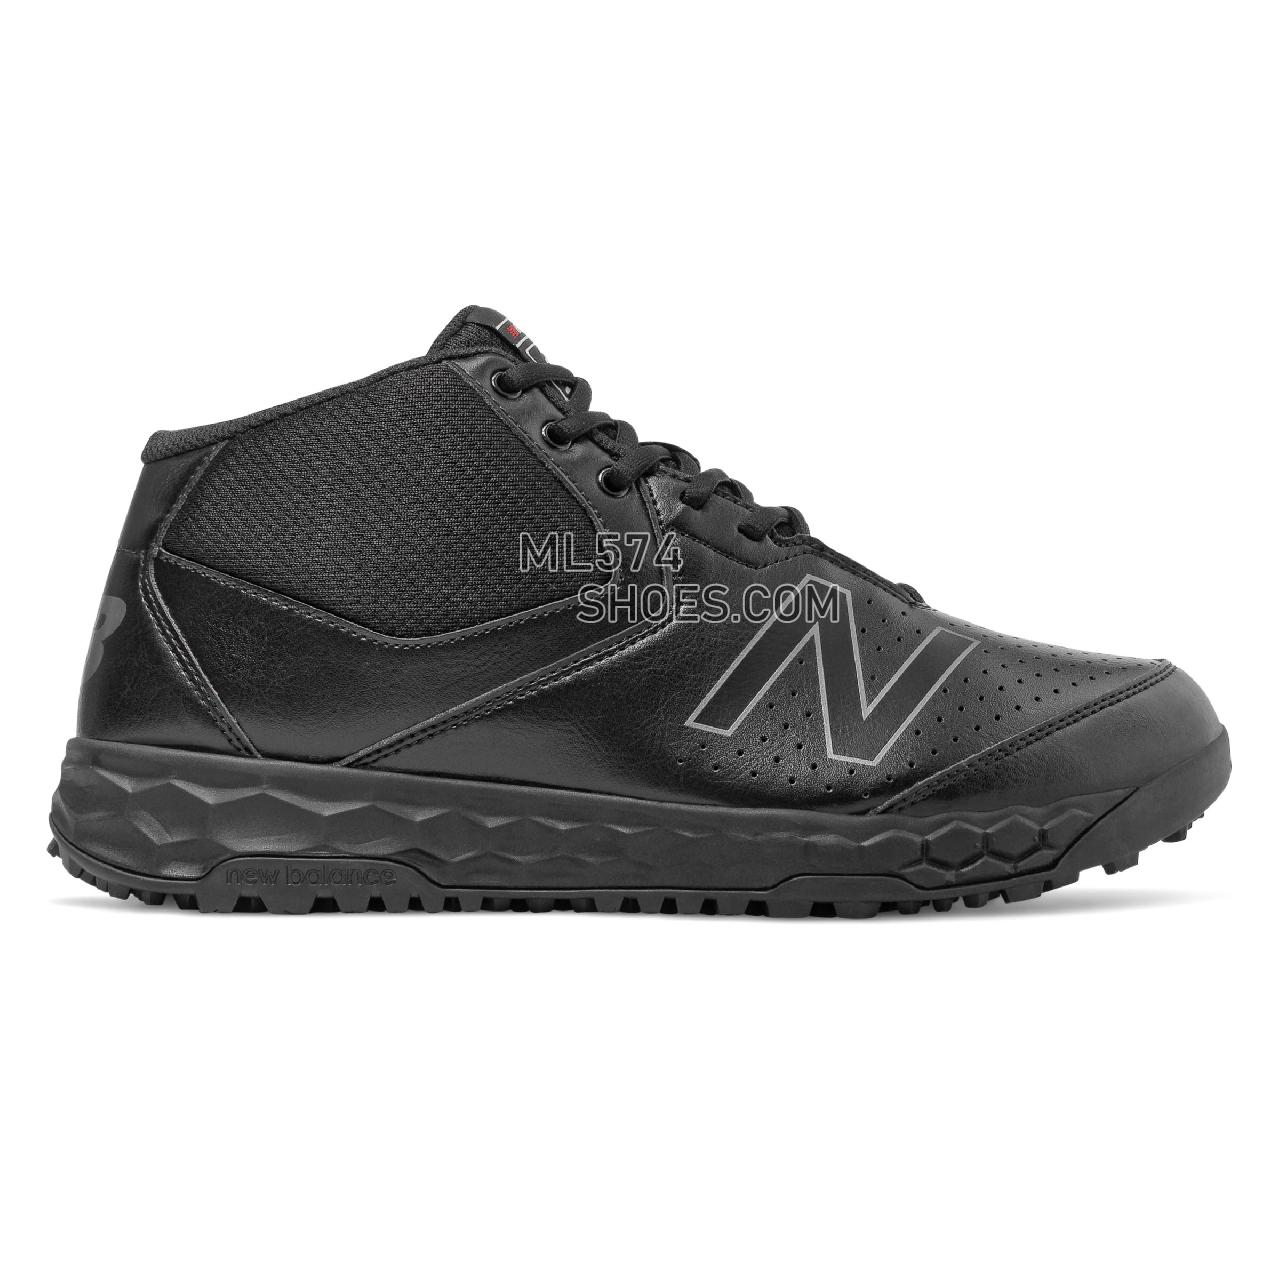 New Balance 950v3 - Men's Umpire Footwear - Black - MUM950B3